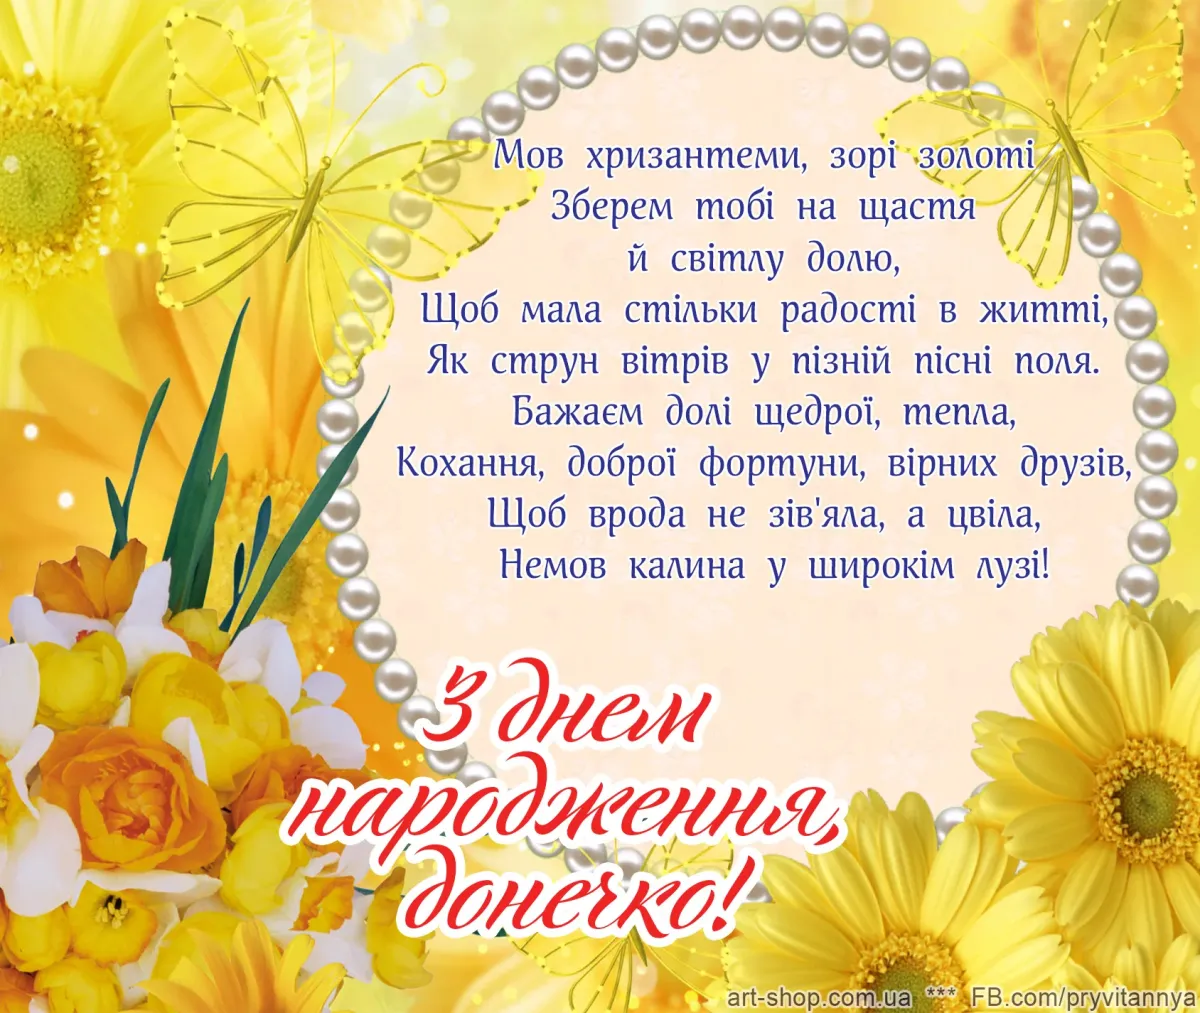 З днем народженням мами. З днем народження. Вітаю з днем народження. Открытка с днем народження на украинском. Зднемнародженя.